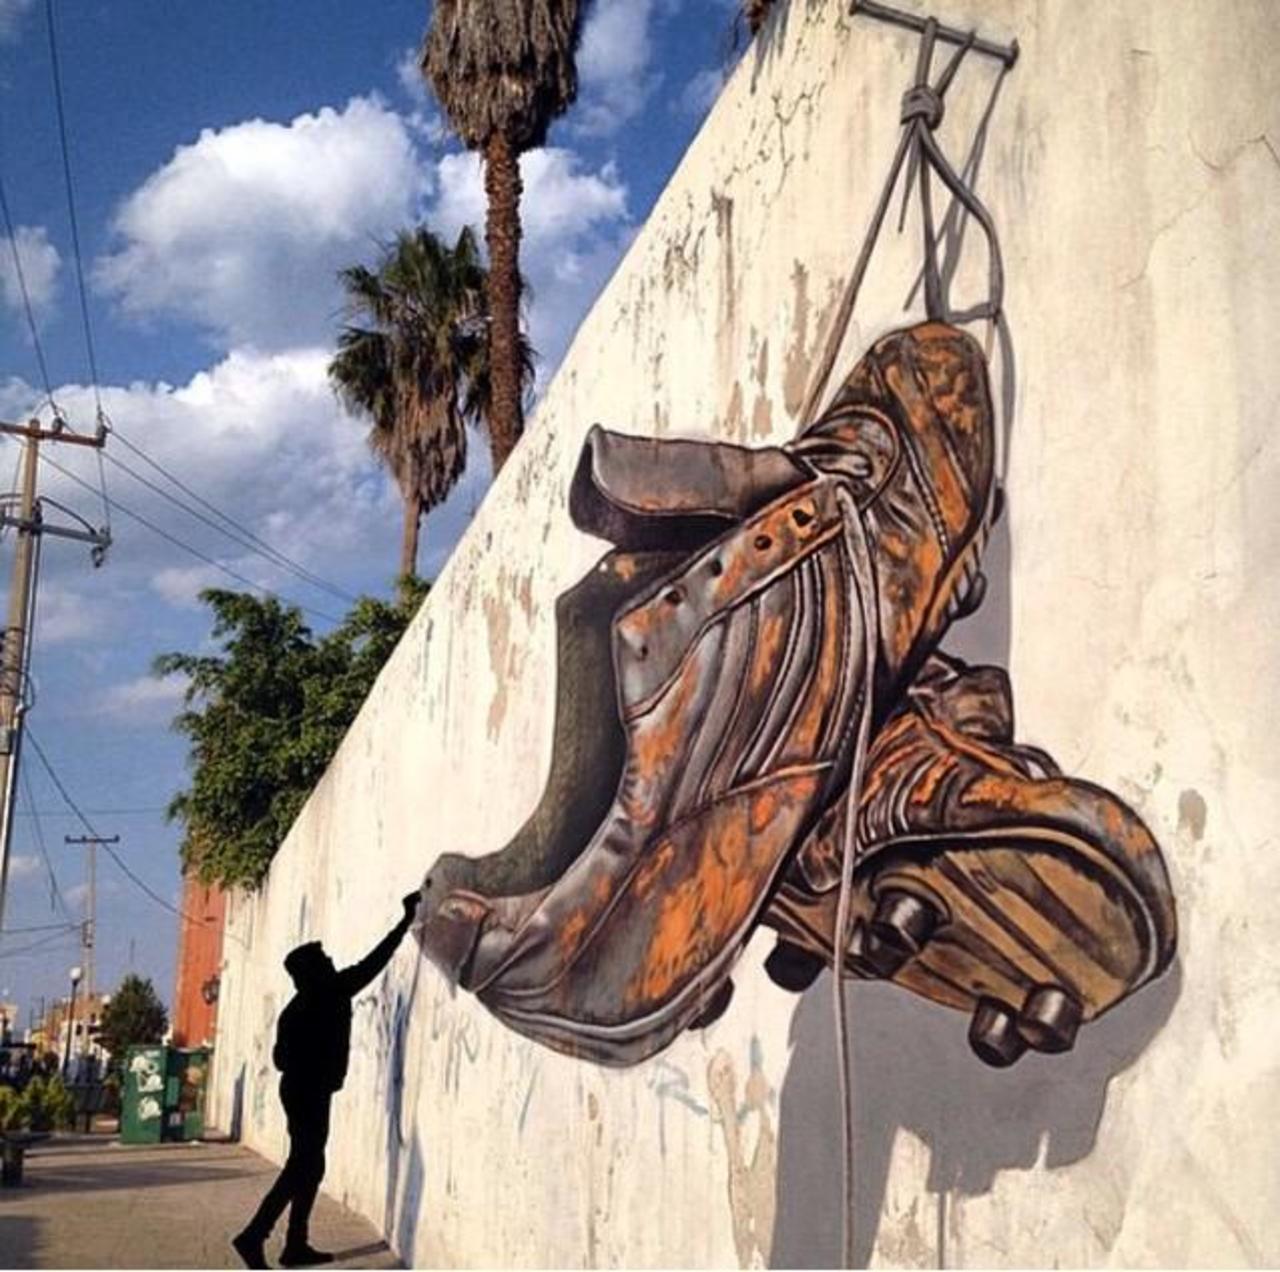 Awesome anamorphic 3D Street Art by Juandres Vera 

#art #graffiti #mural #streetart http://t.co/lMV58Mykq1